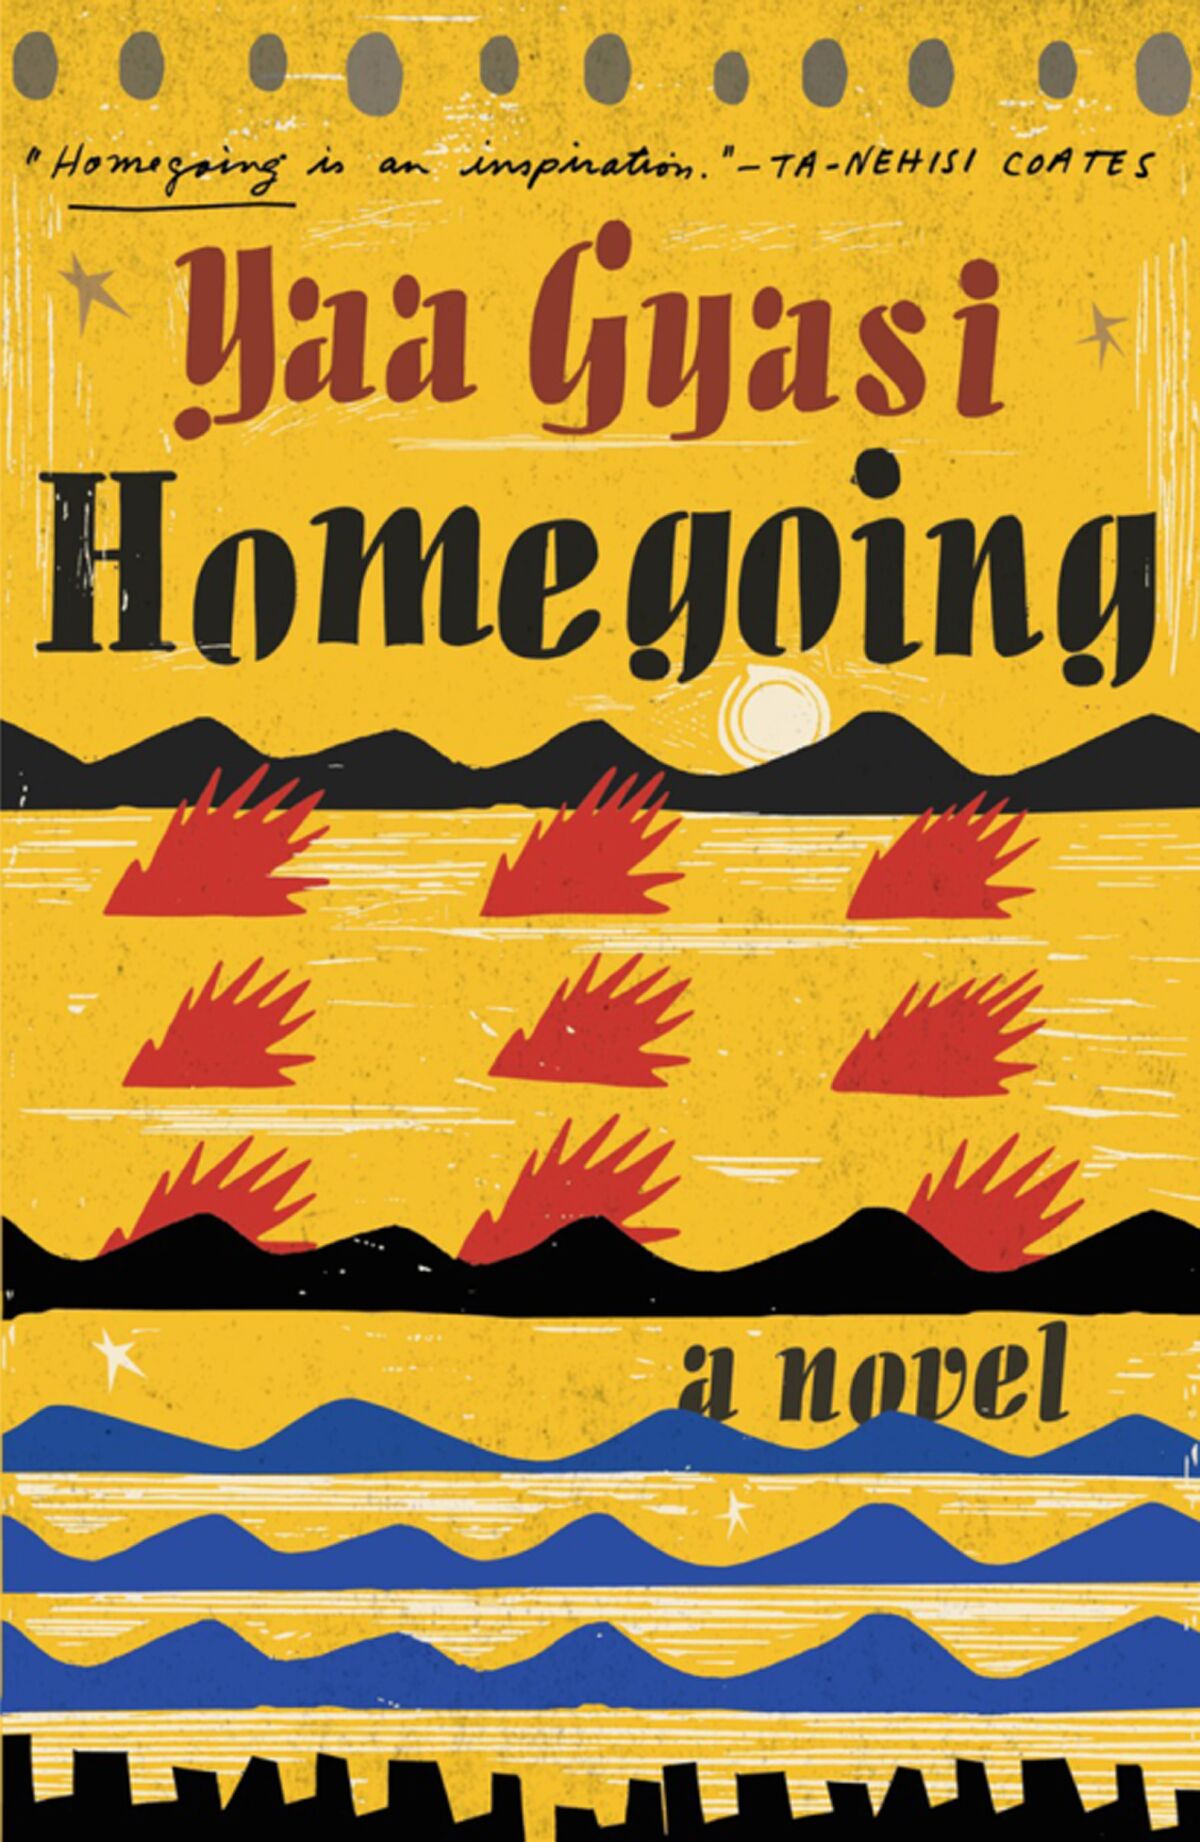 "Homegoing" by Yaa Gyasi
